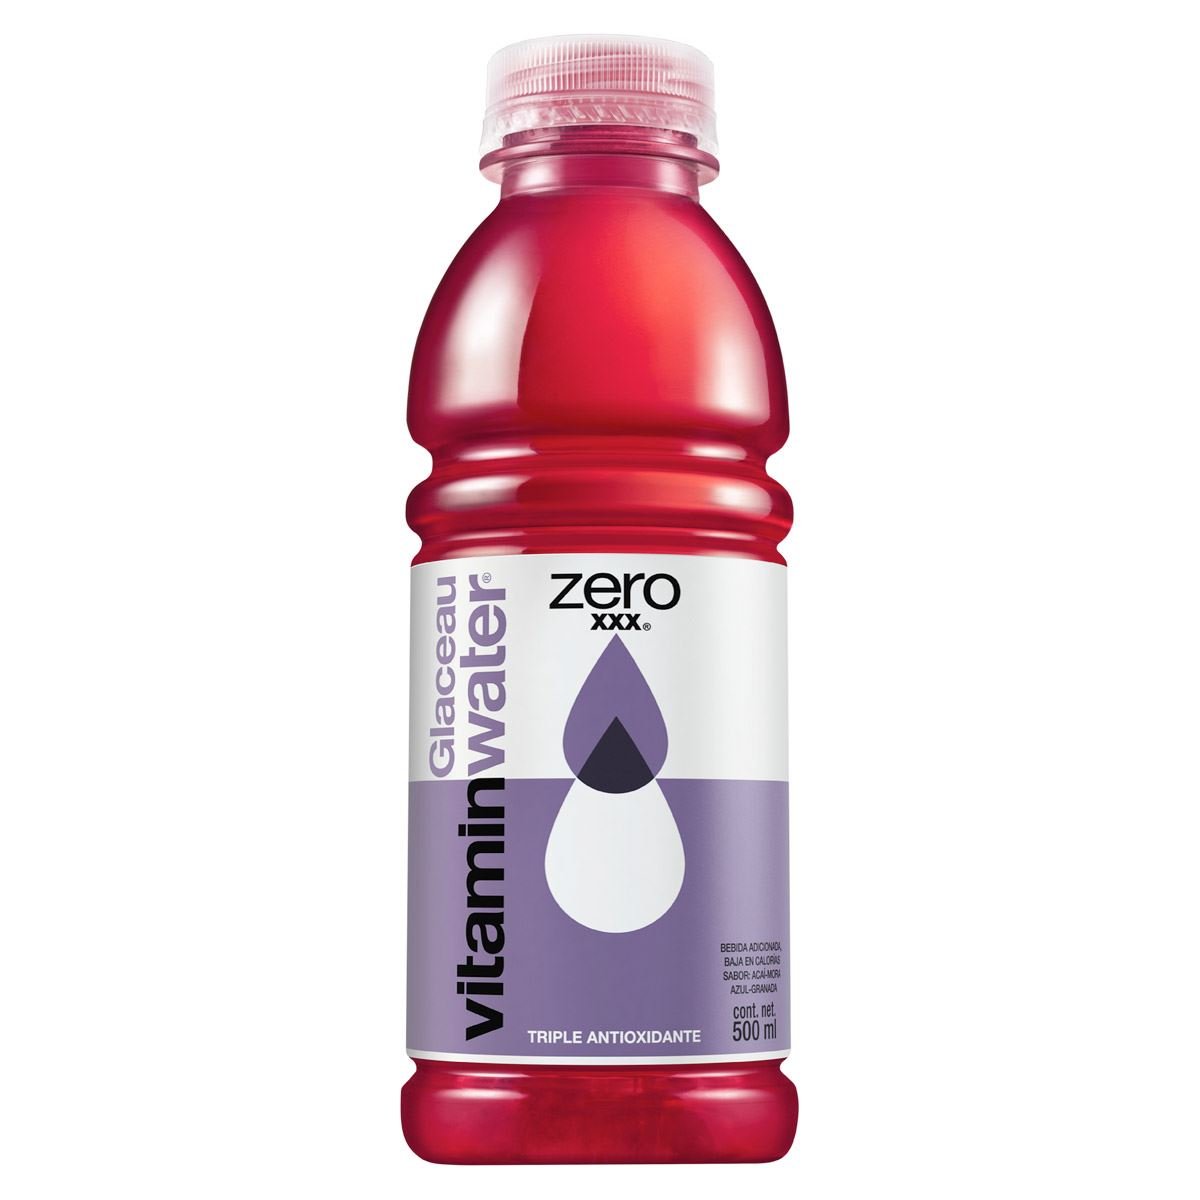 Agua Vitaminada "Zero" XXX 500ml